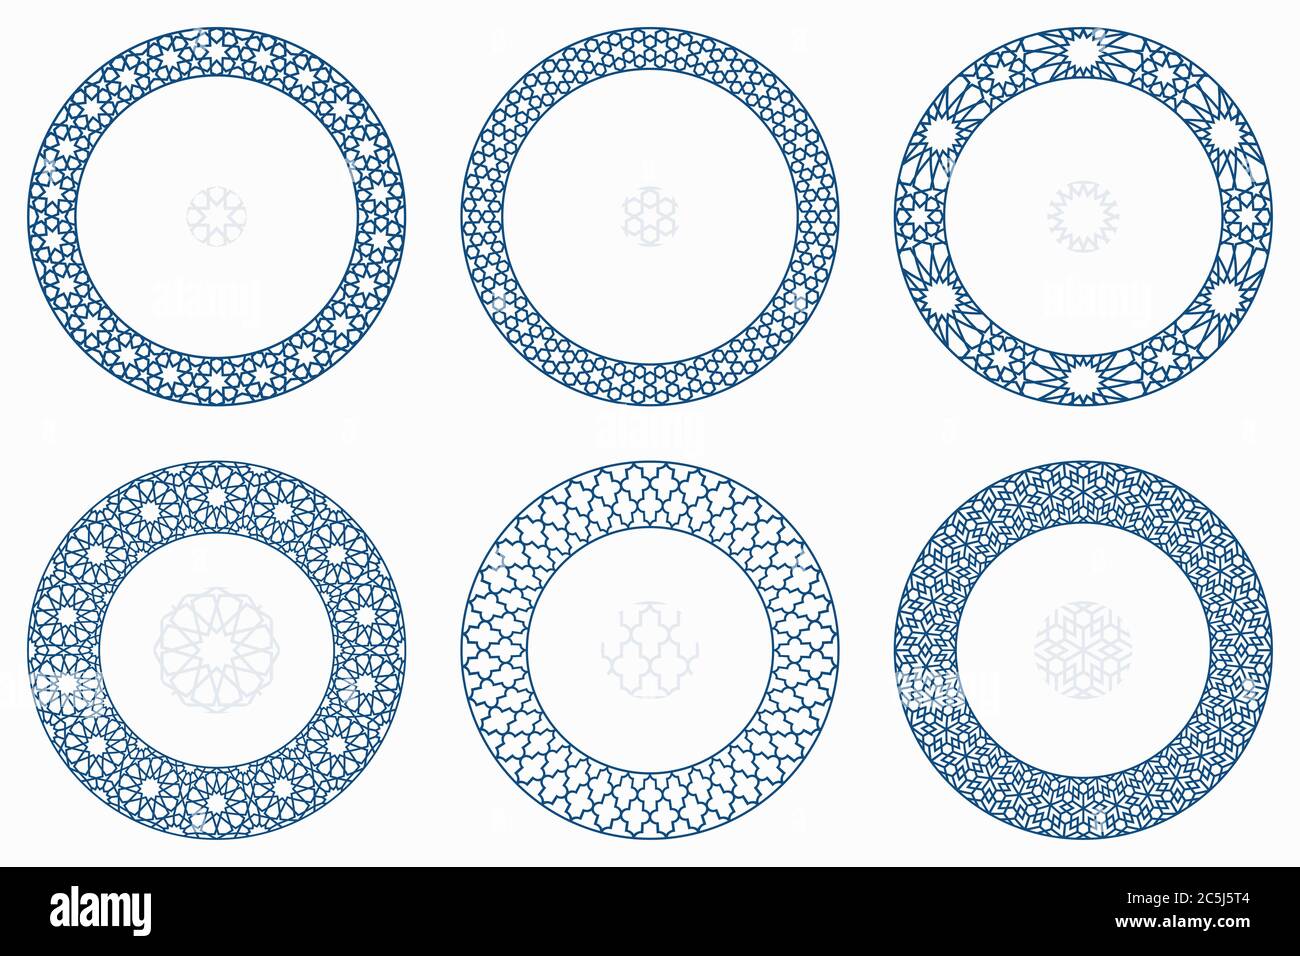 Arabische geometrische runde Muster gesetzt. Rahmen, Rahmen. Vektor-Illustration von runden islamischen Ornament-Elemente mit nahtlosen Muster Pinsel Stock Vektor